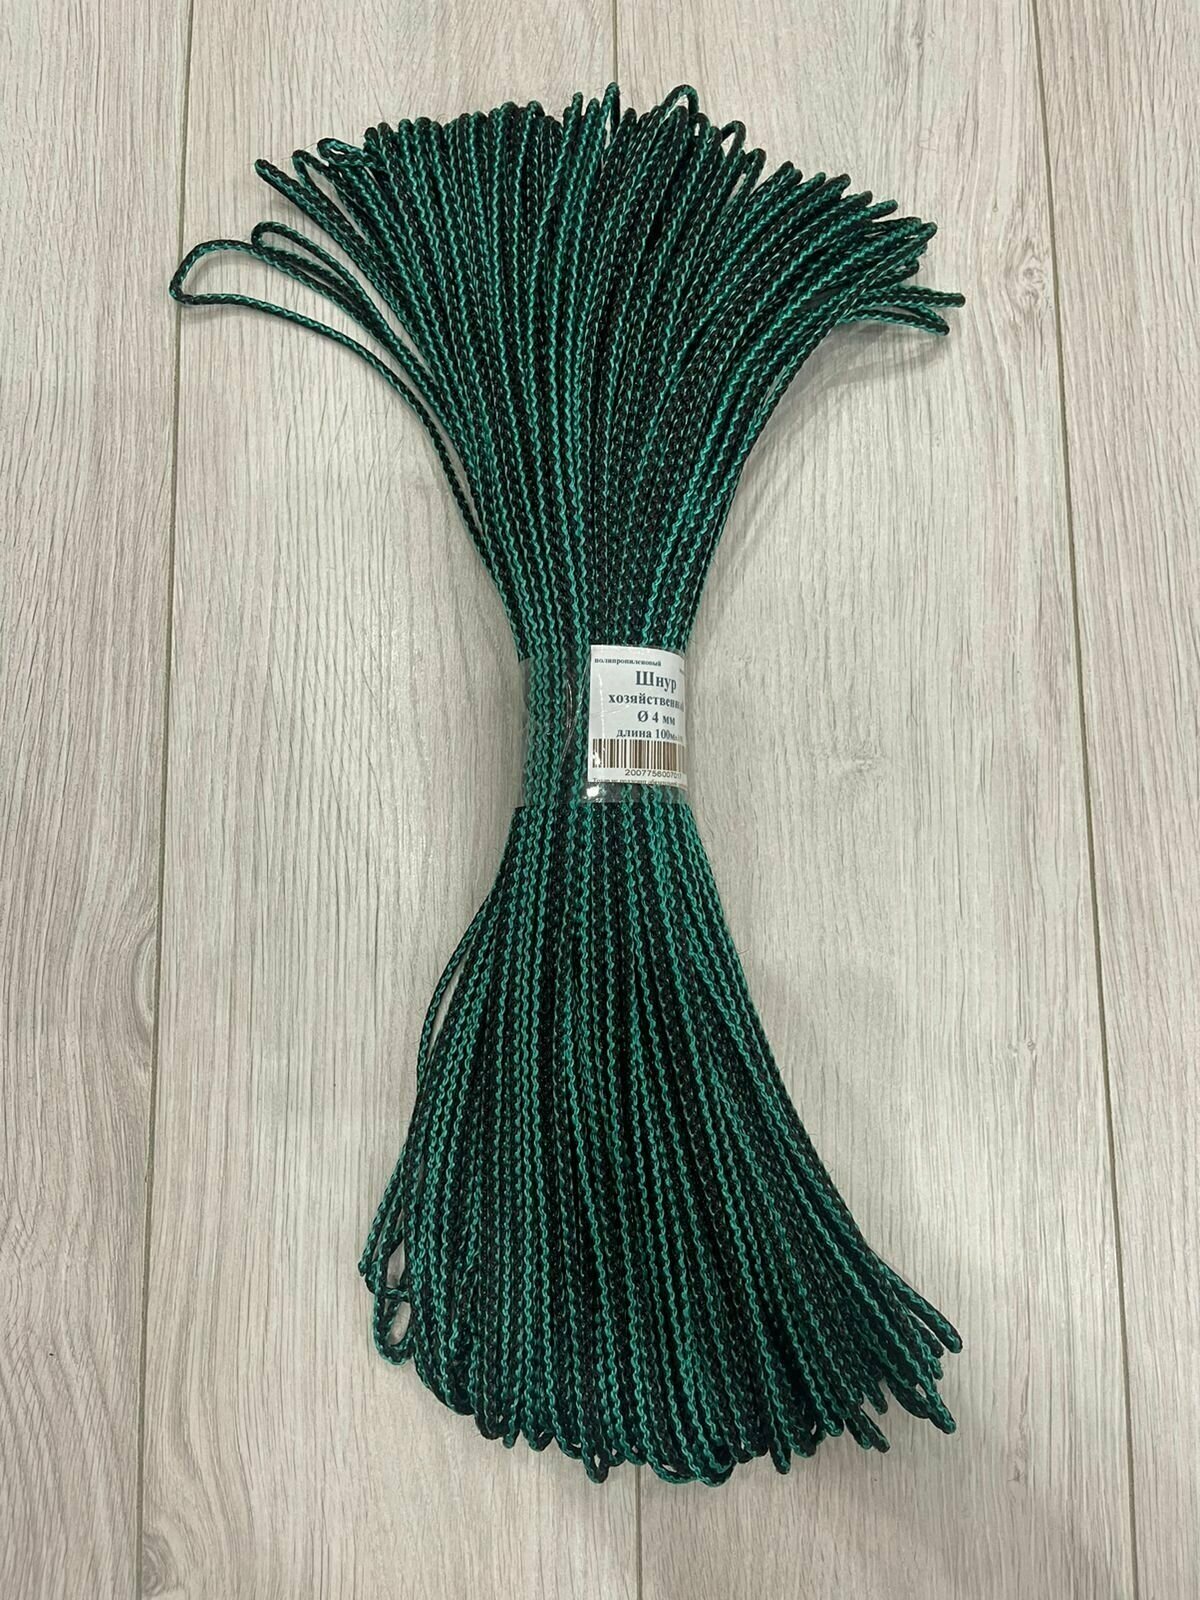 Веревка бельевая, шнур хозяйственный, усилена сердечником, цвет темно-зеленый, черный, диаметр шнура 4мм, моток 100 метров